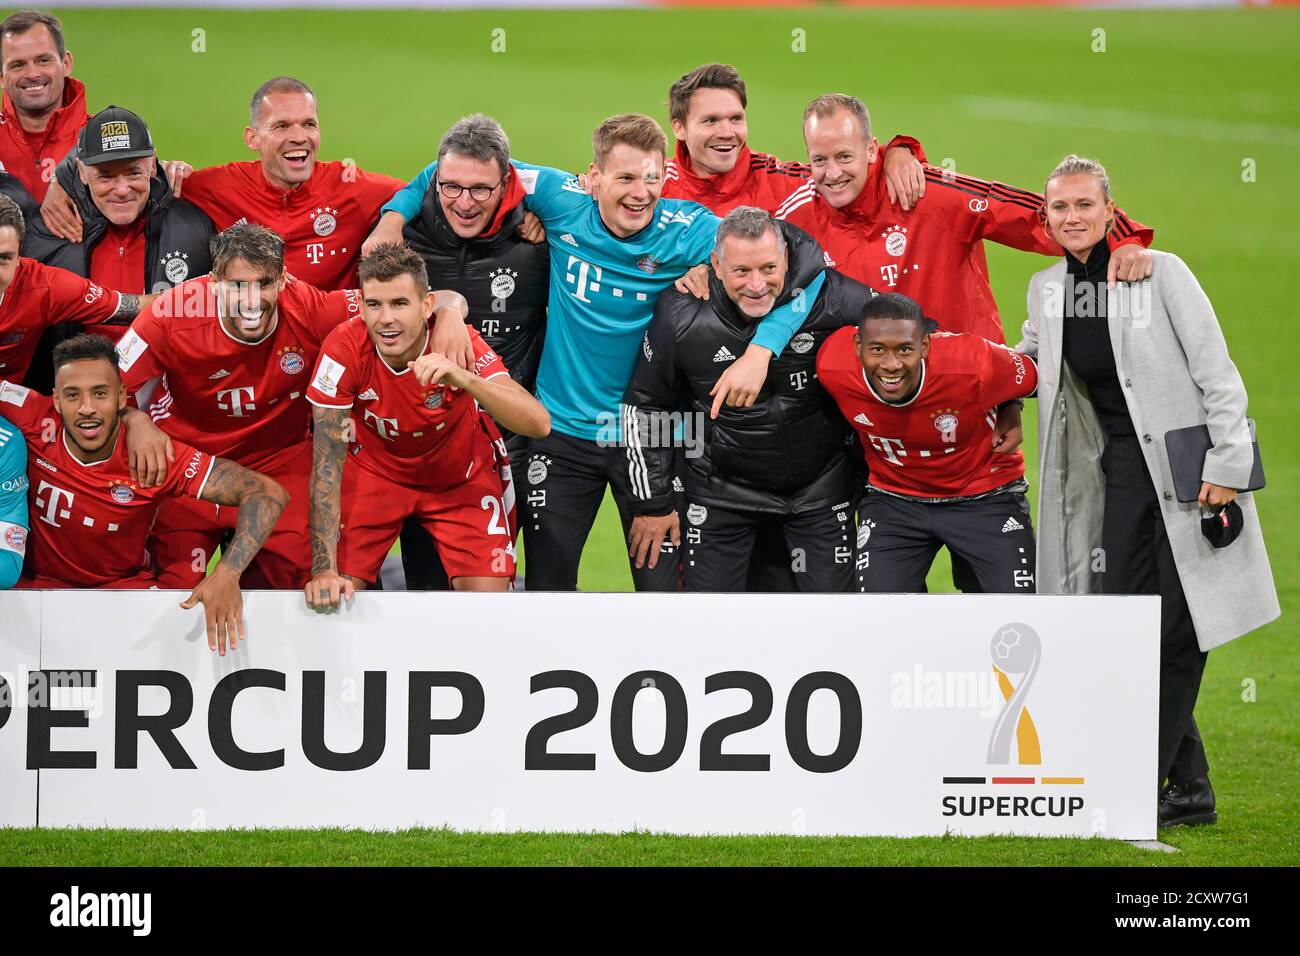 Allianz Arena München Deutschland 30.09.20, Fußball: Deutsches SUPERCUP-FINALE  2020/2021, FC Bayern München (FCB, rot) gegen Borussia Dortmund (BVB, gelb)  3:2 - Team Bayern München feiert den Sieg des Deutschen Supercup von links: